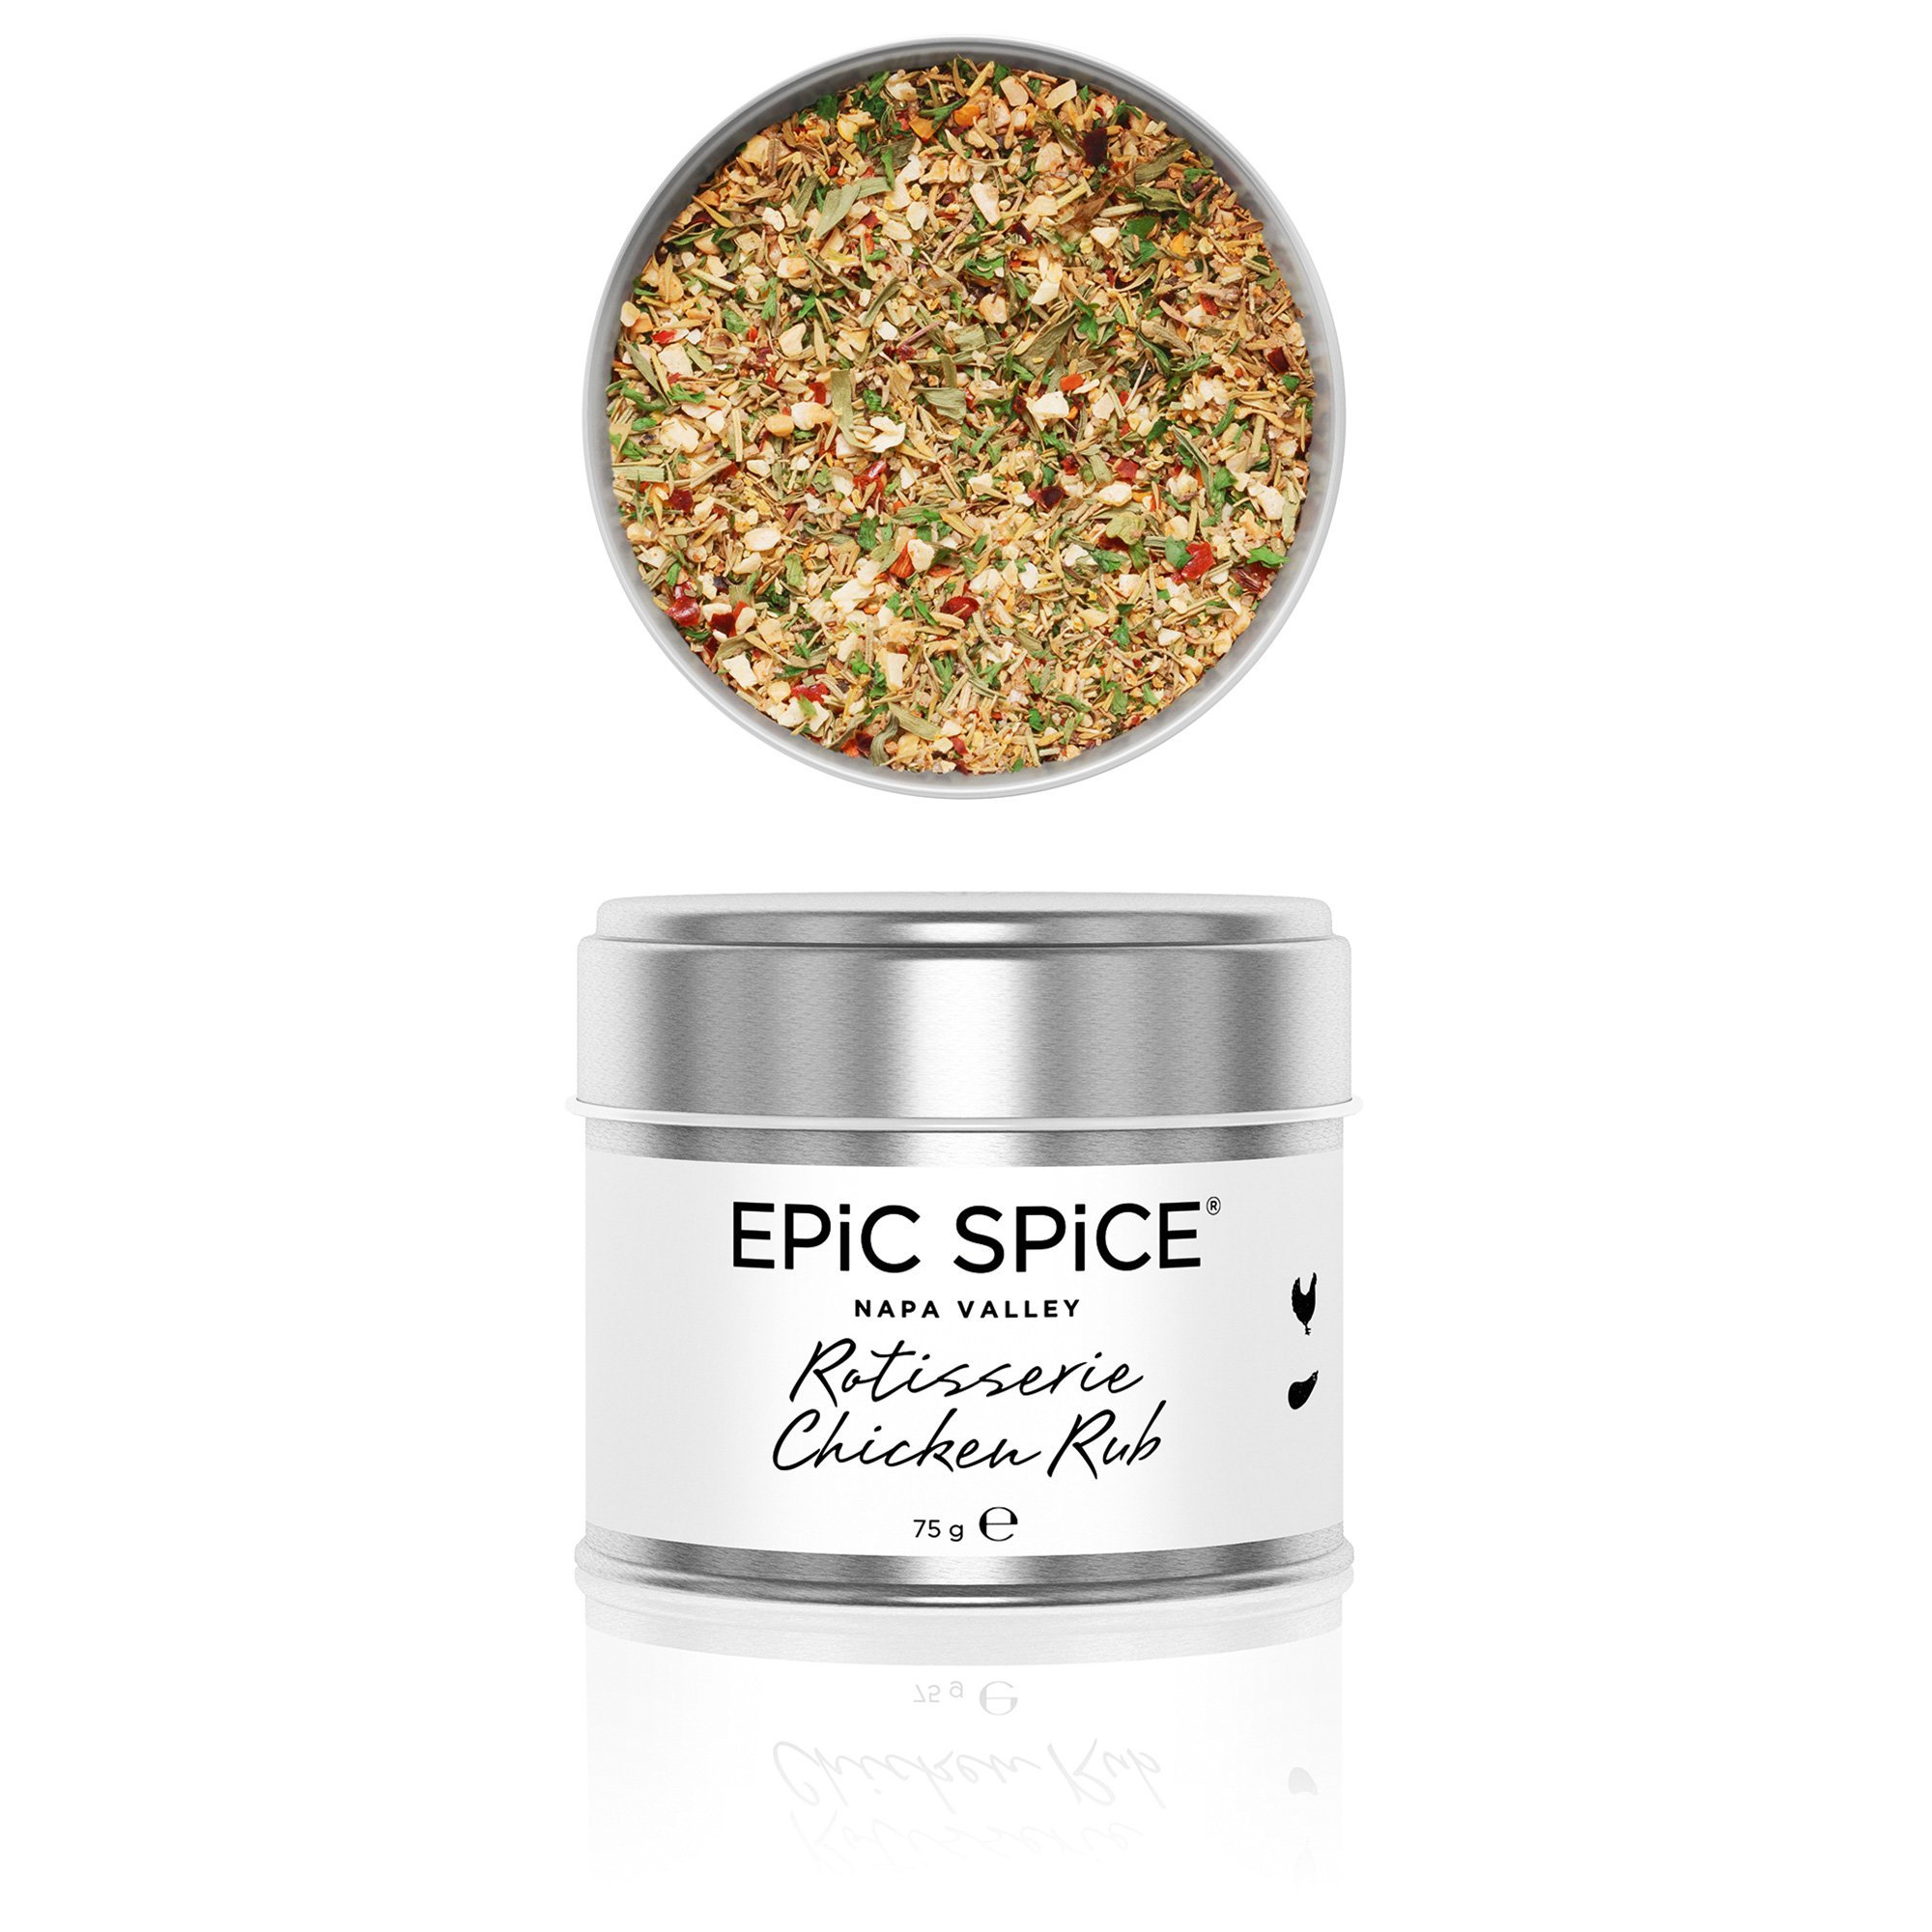 9: Epic Spice Rotisserie chicken rub, 75 g